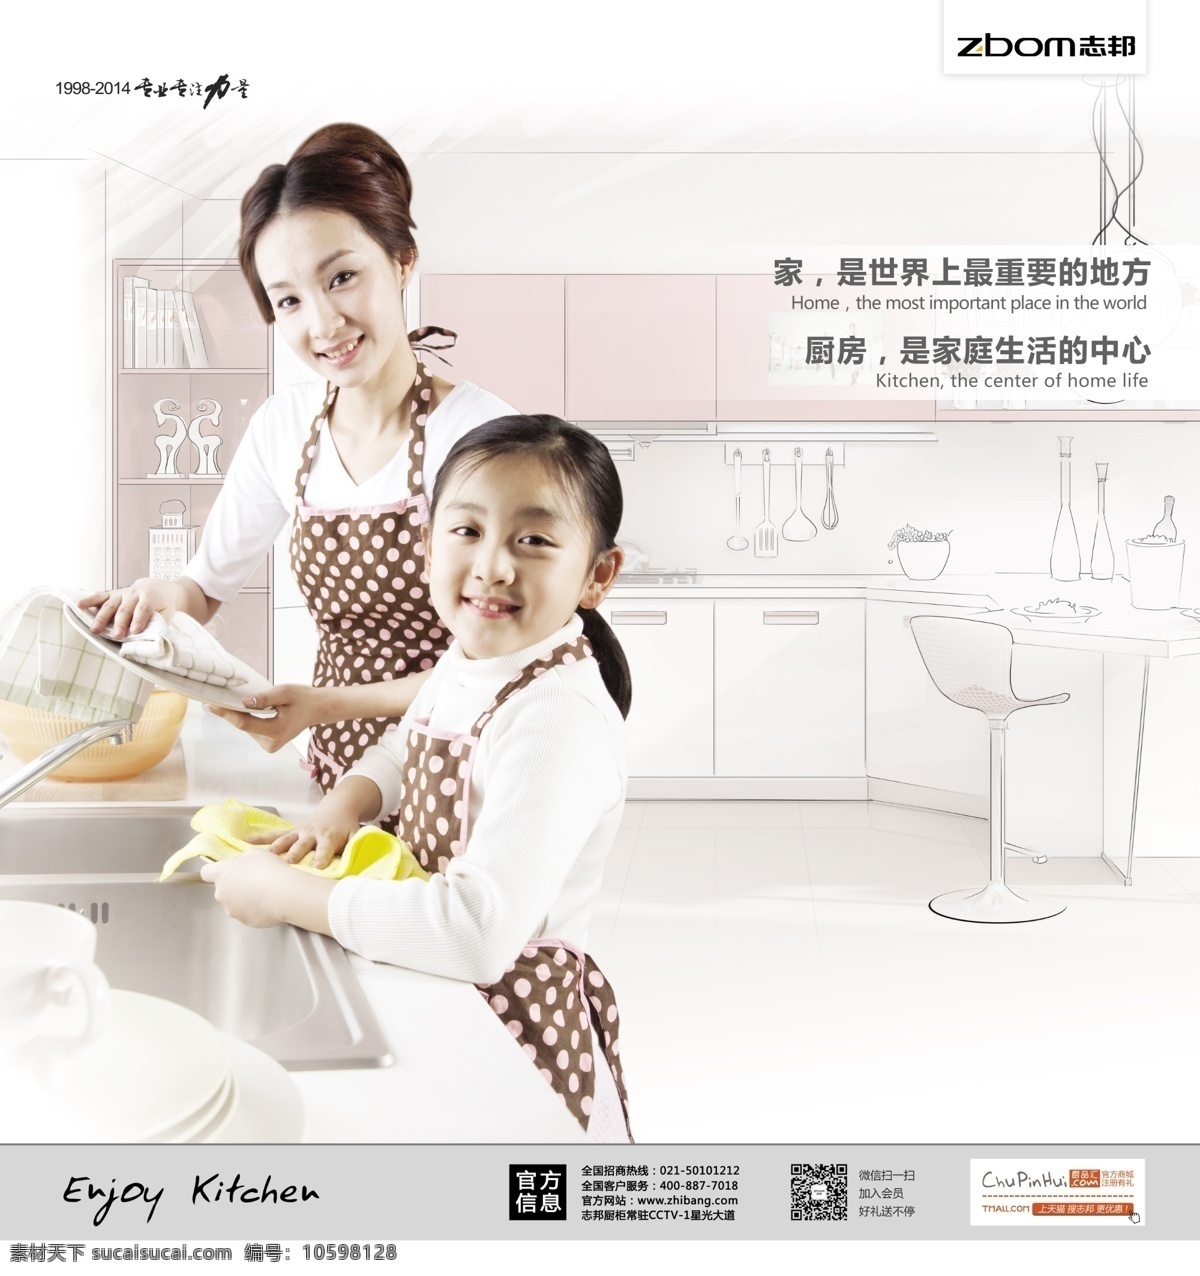 志 邦 厨柜 宣传画 志邦厨柜 宣传 海报 母女海报 母女 洗碗 做家务